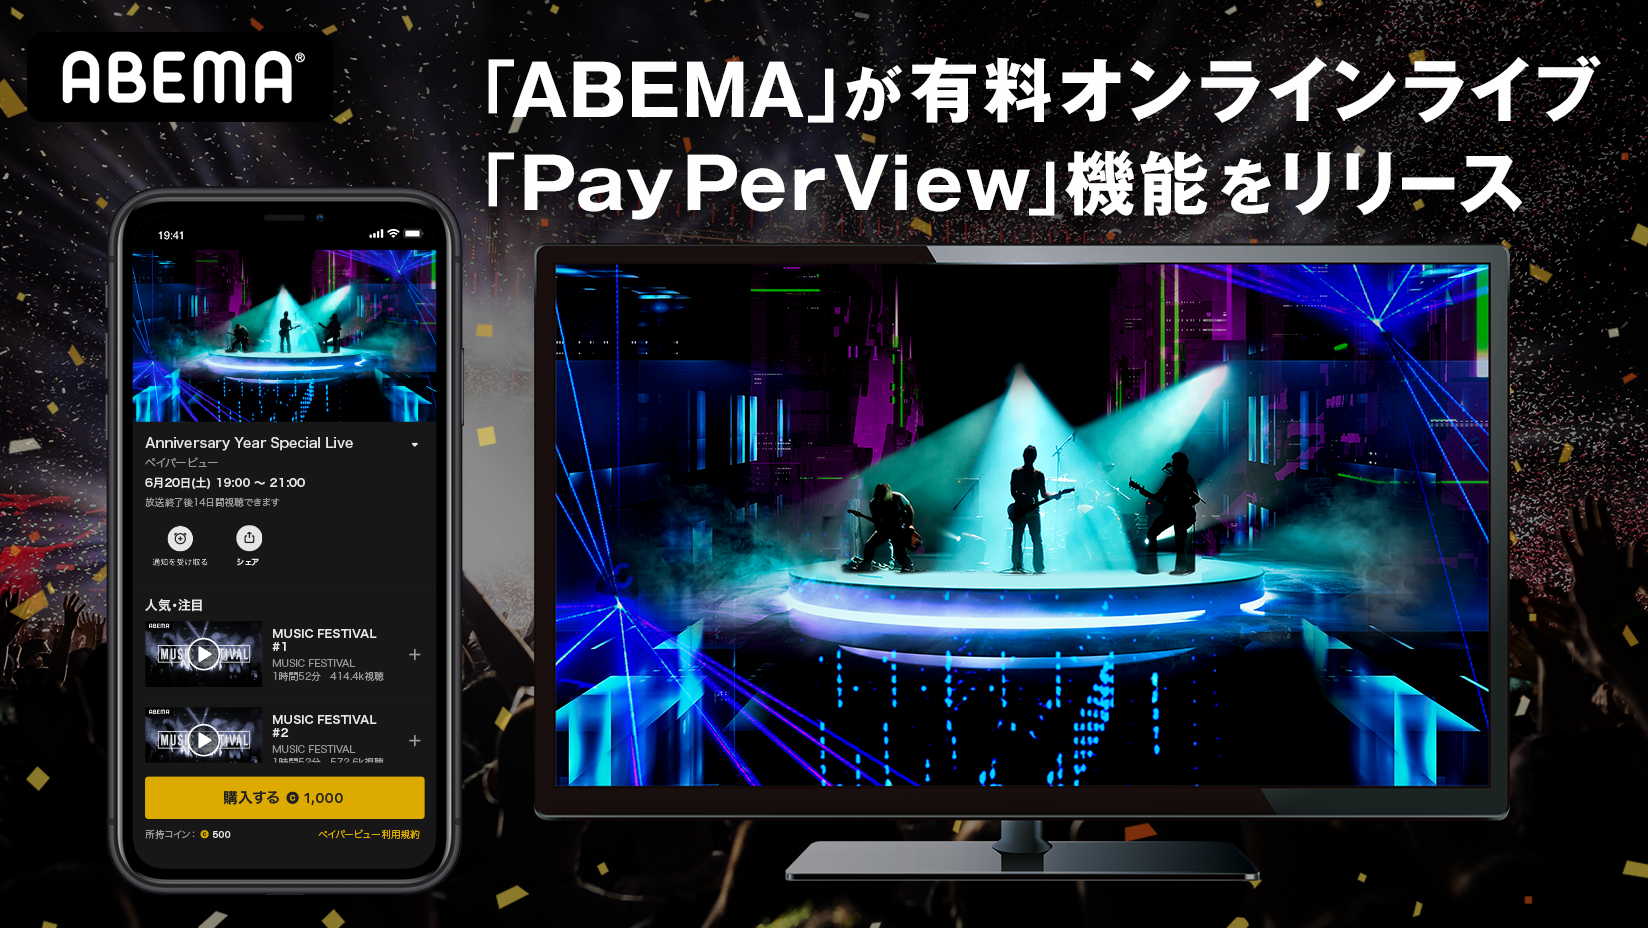 ABEMA」が有料オンラインライブ「PayPerView」（ペイパービュー）機能をリリース | 株式会社サイバーエージェント